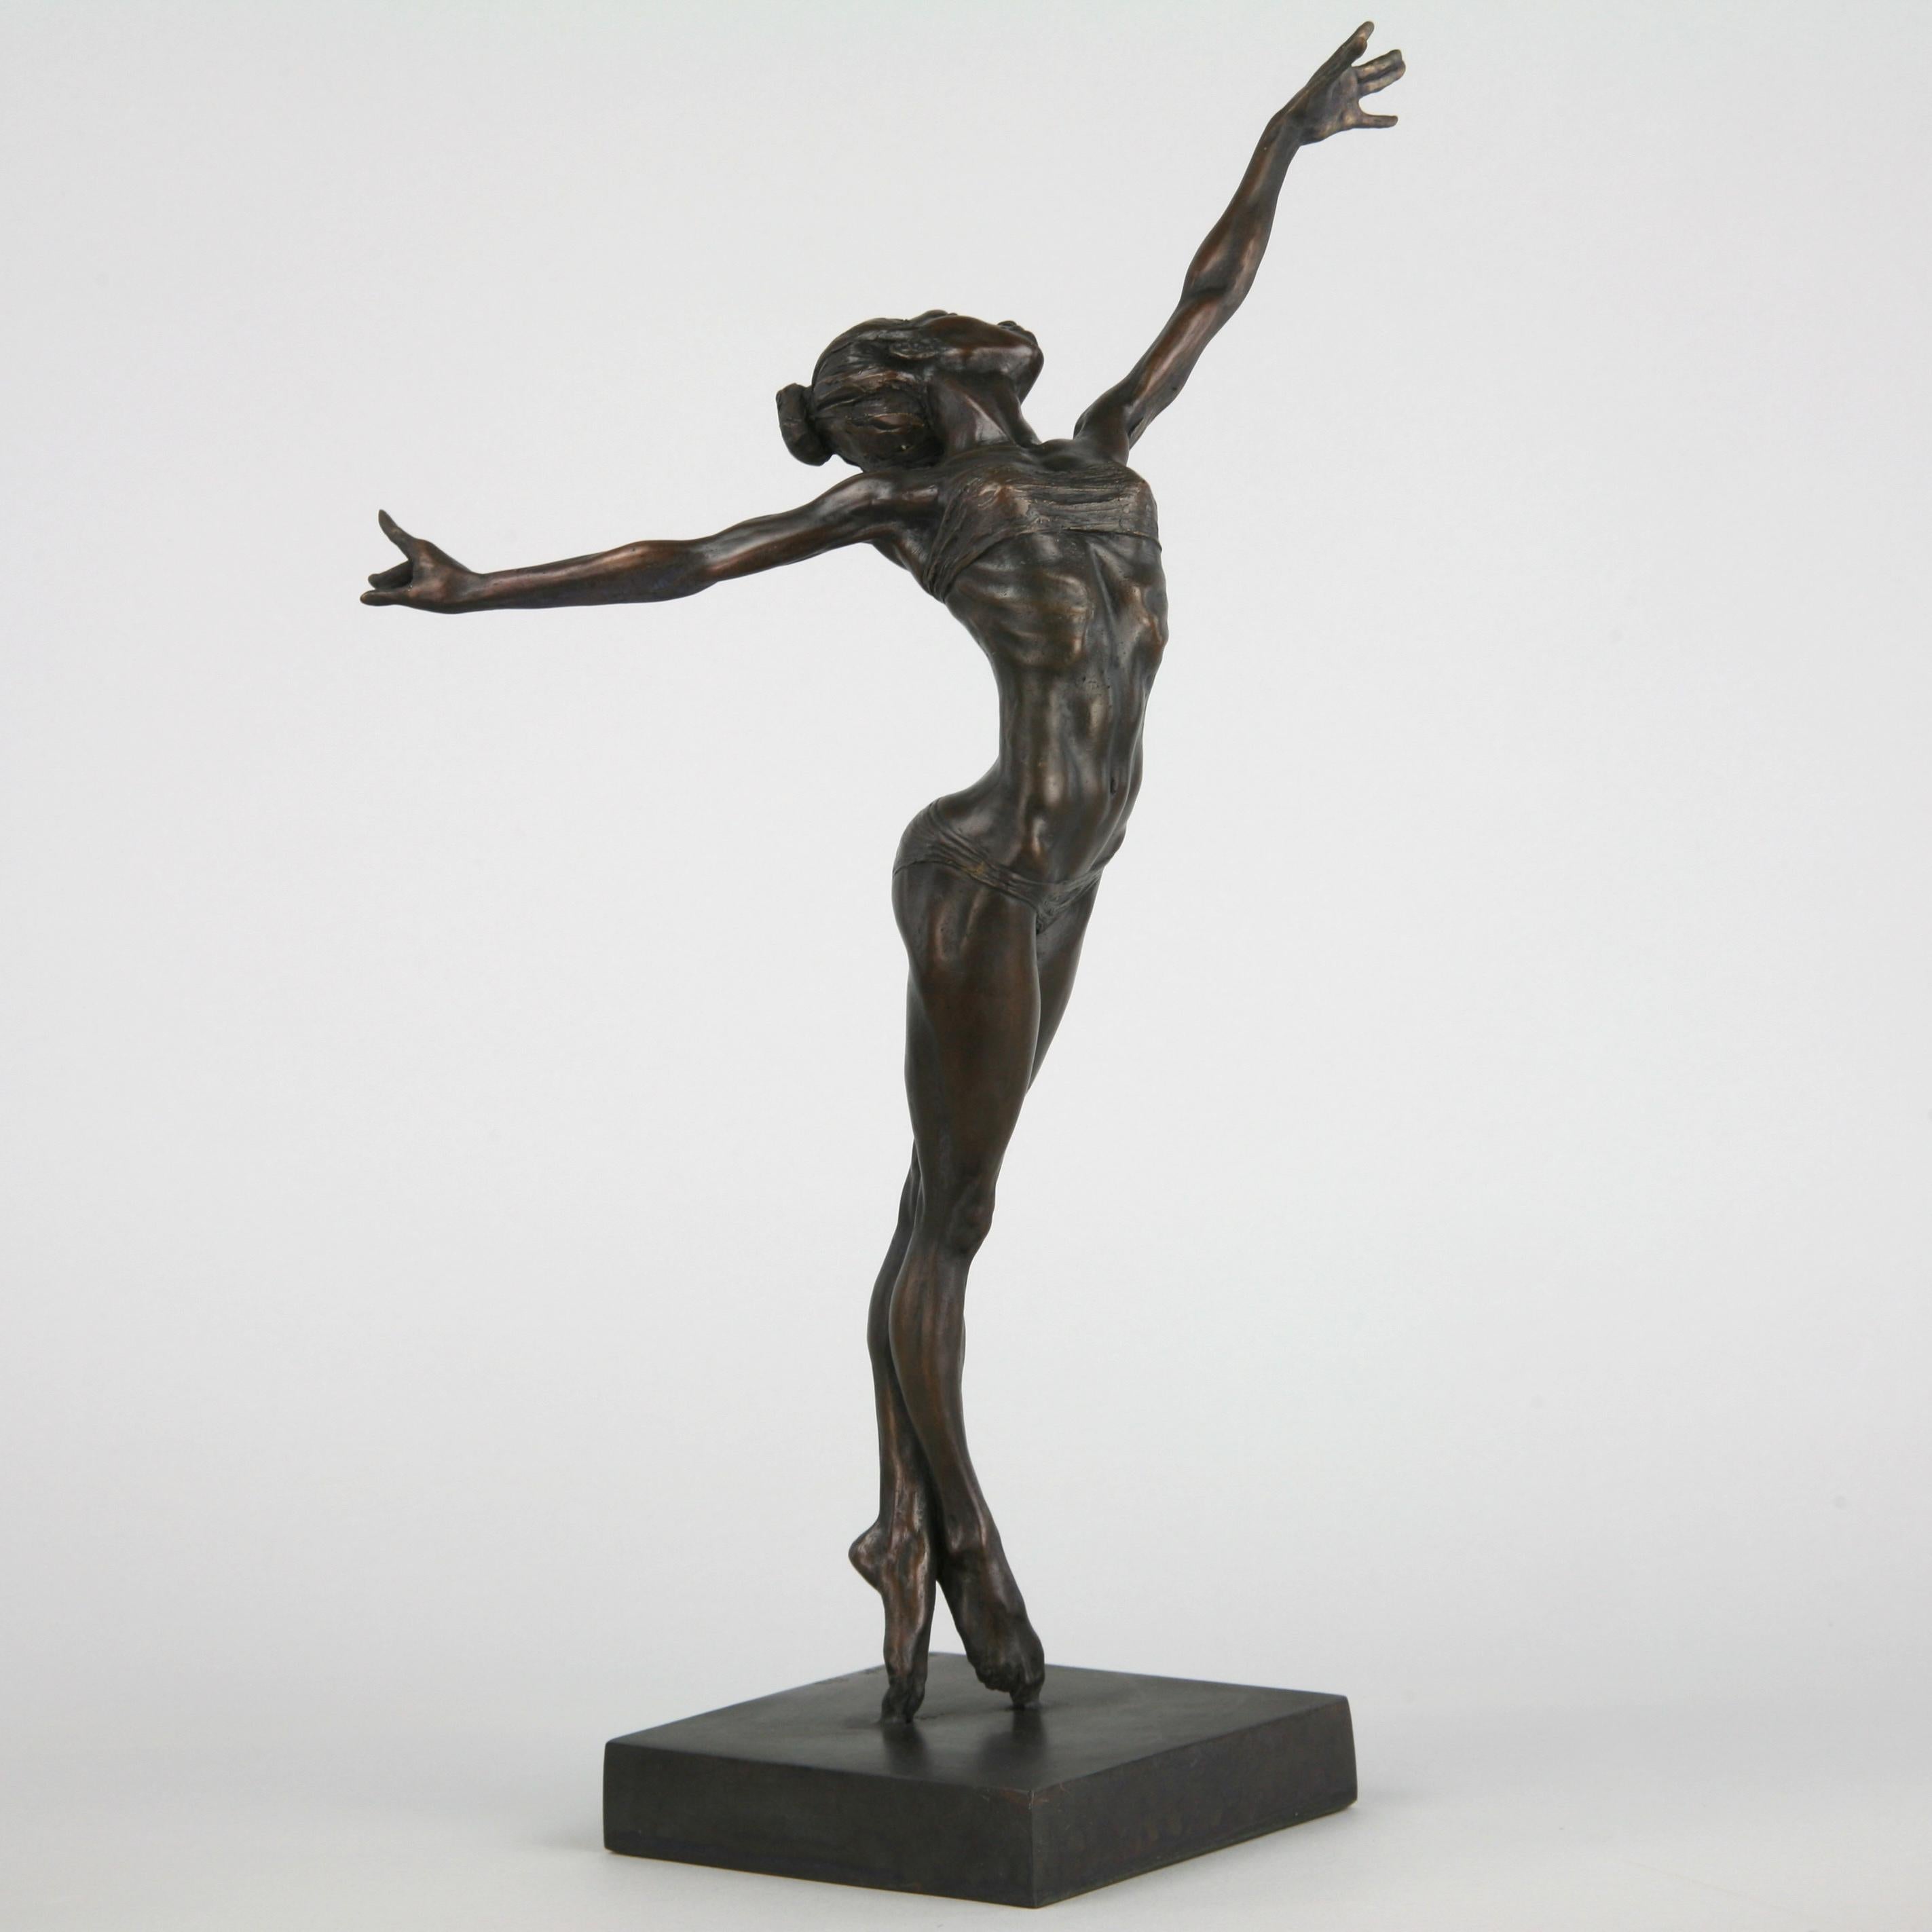 Pole Dancer-original nude figurative bronze sculpture-artwork-contemporary Art For Sale 3